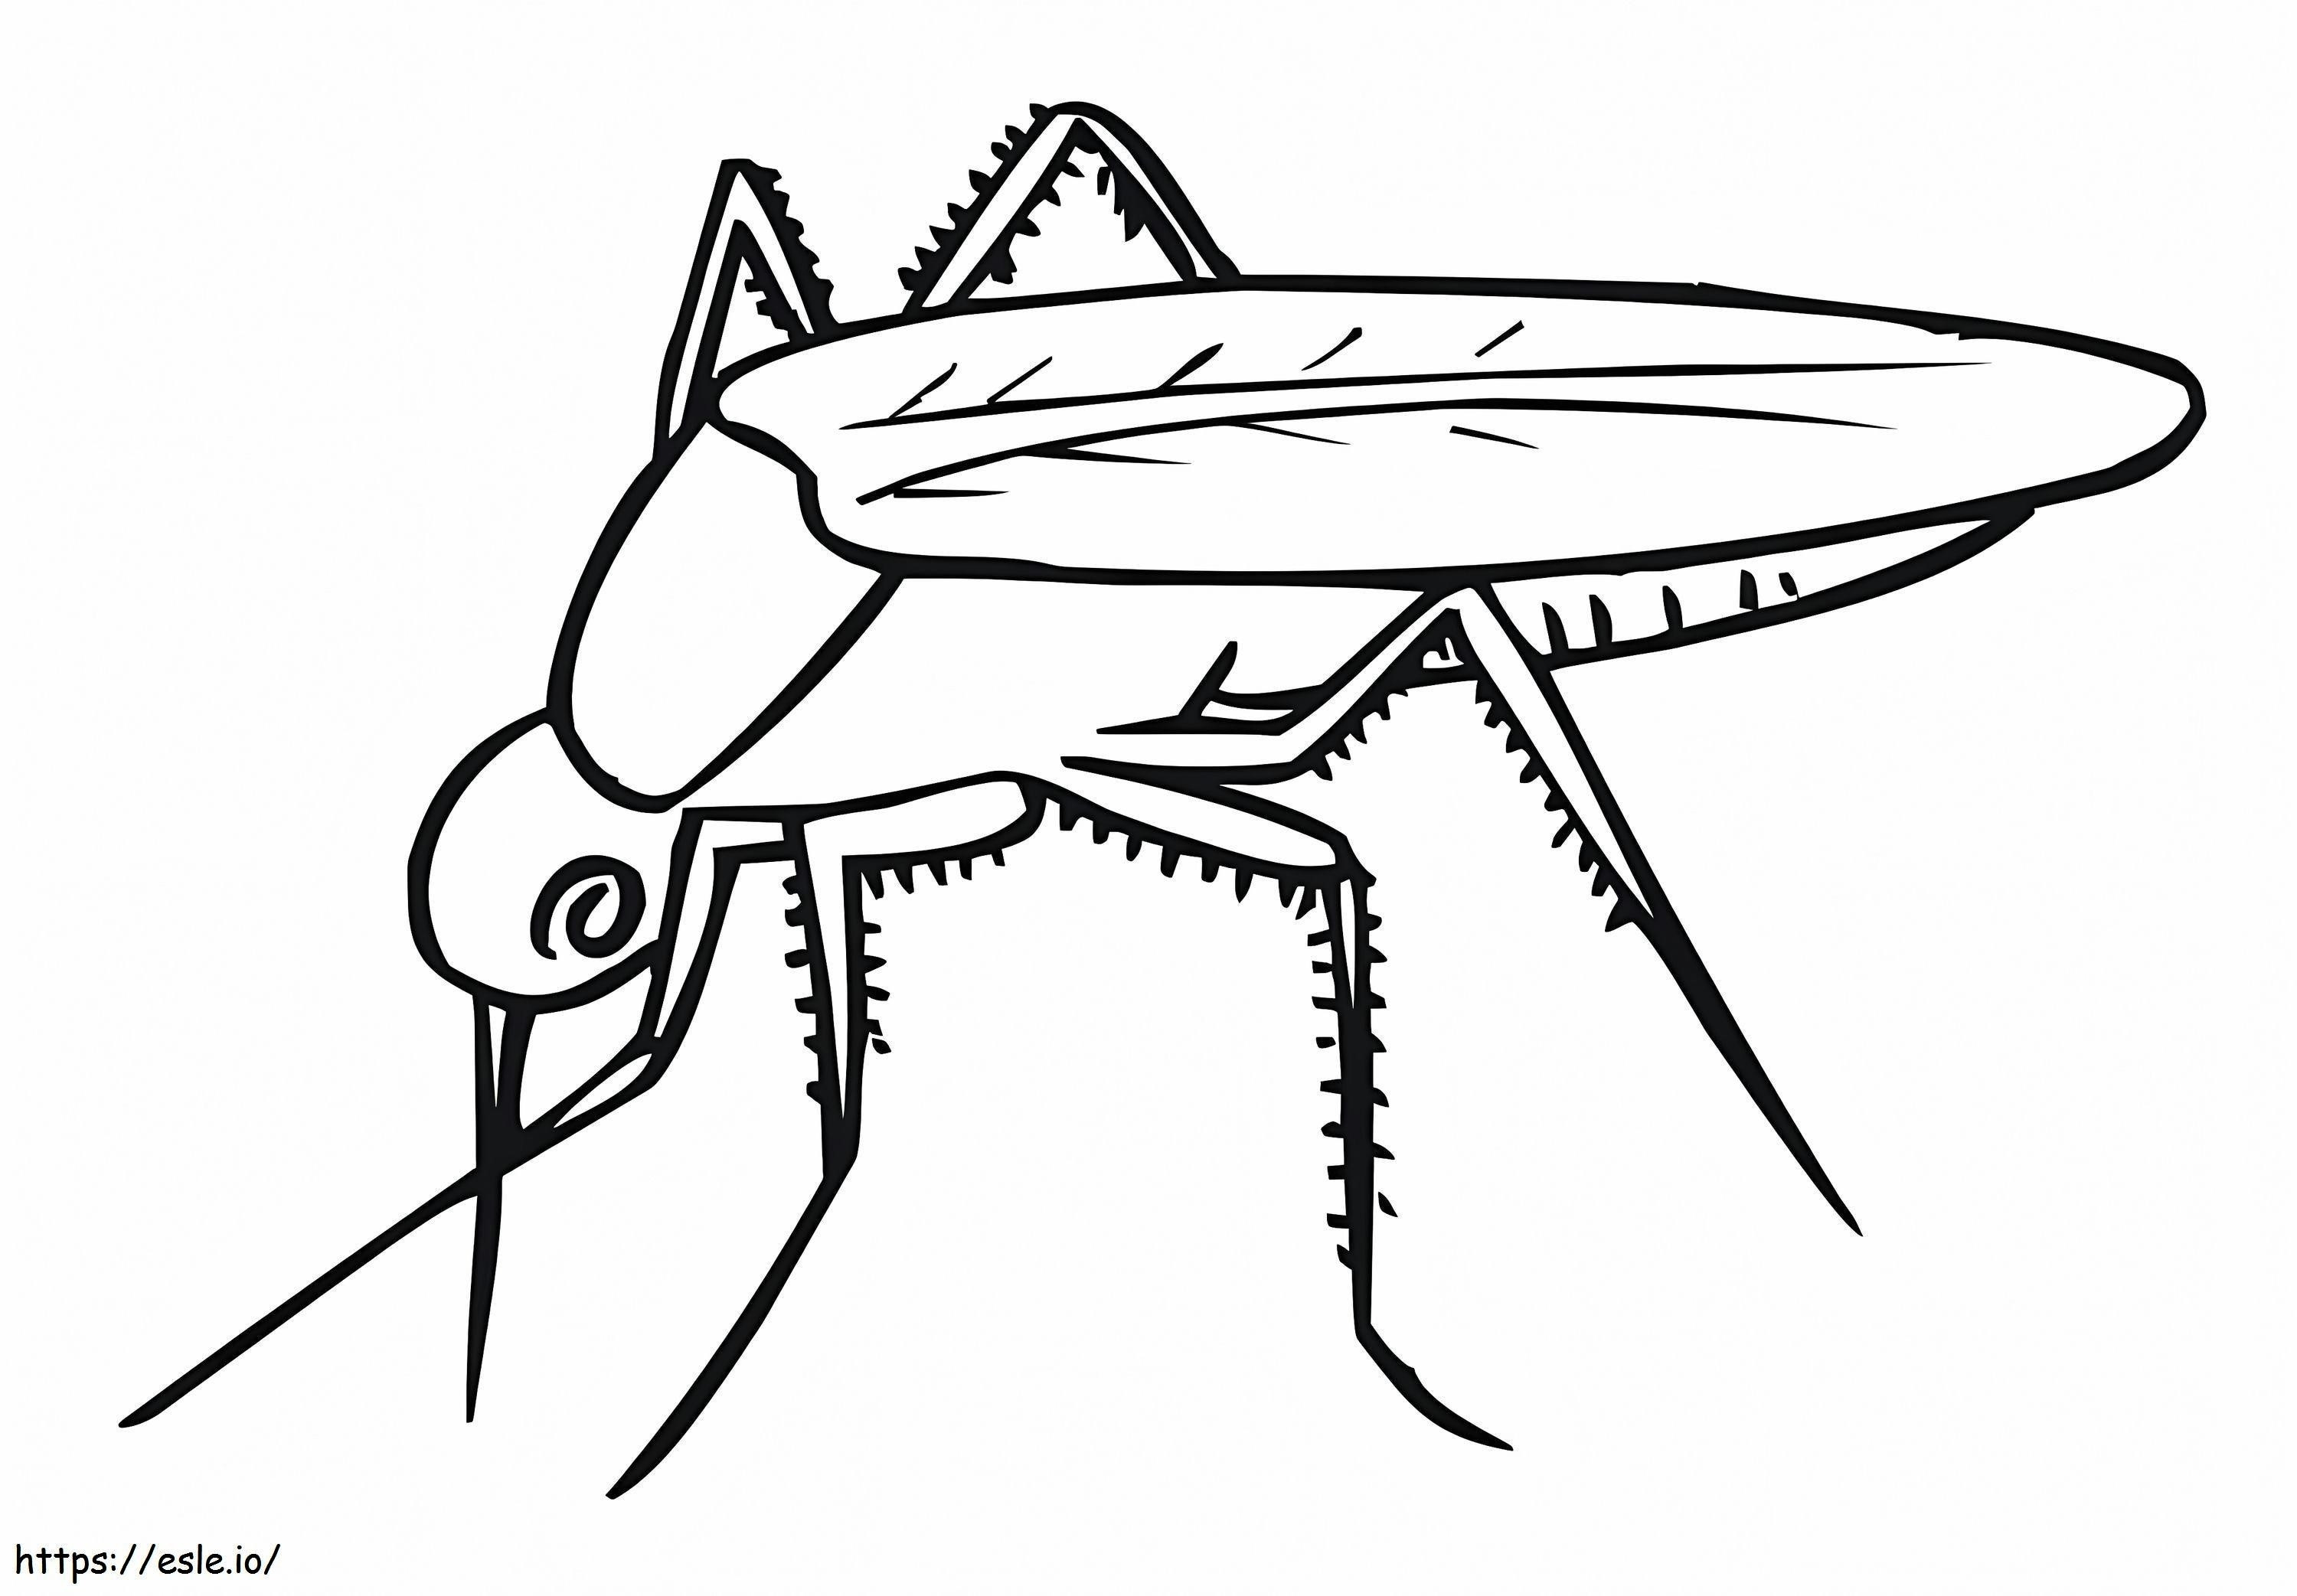 Una semplice zanzara da colorare